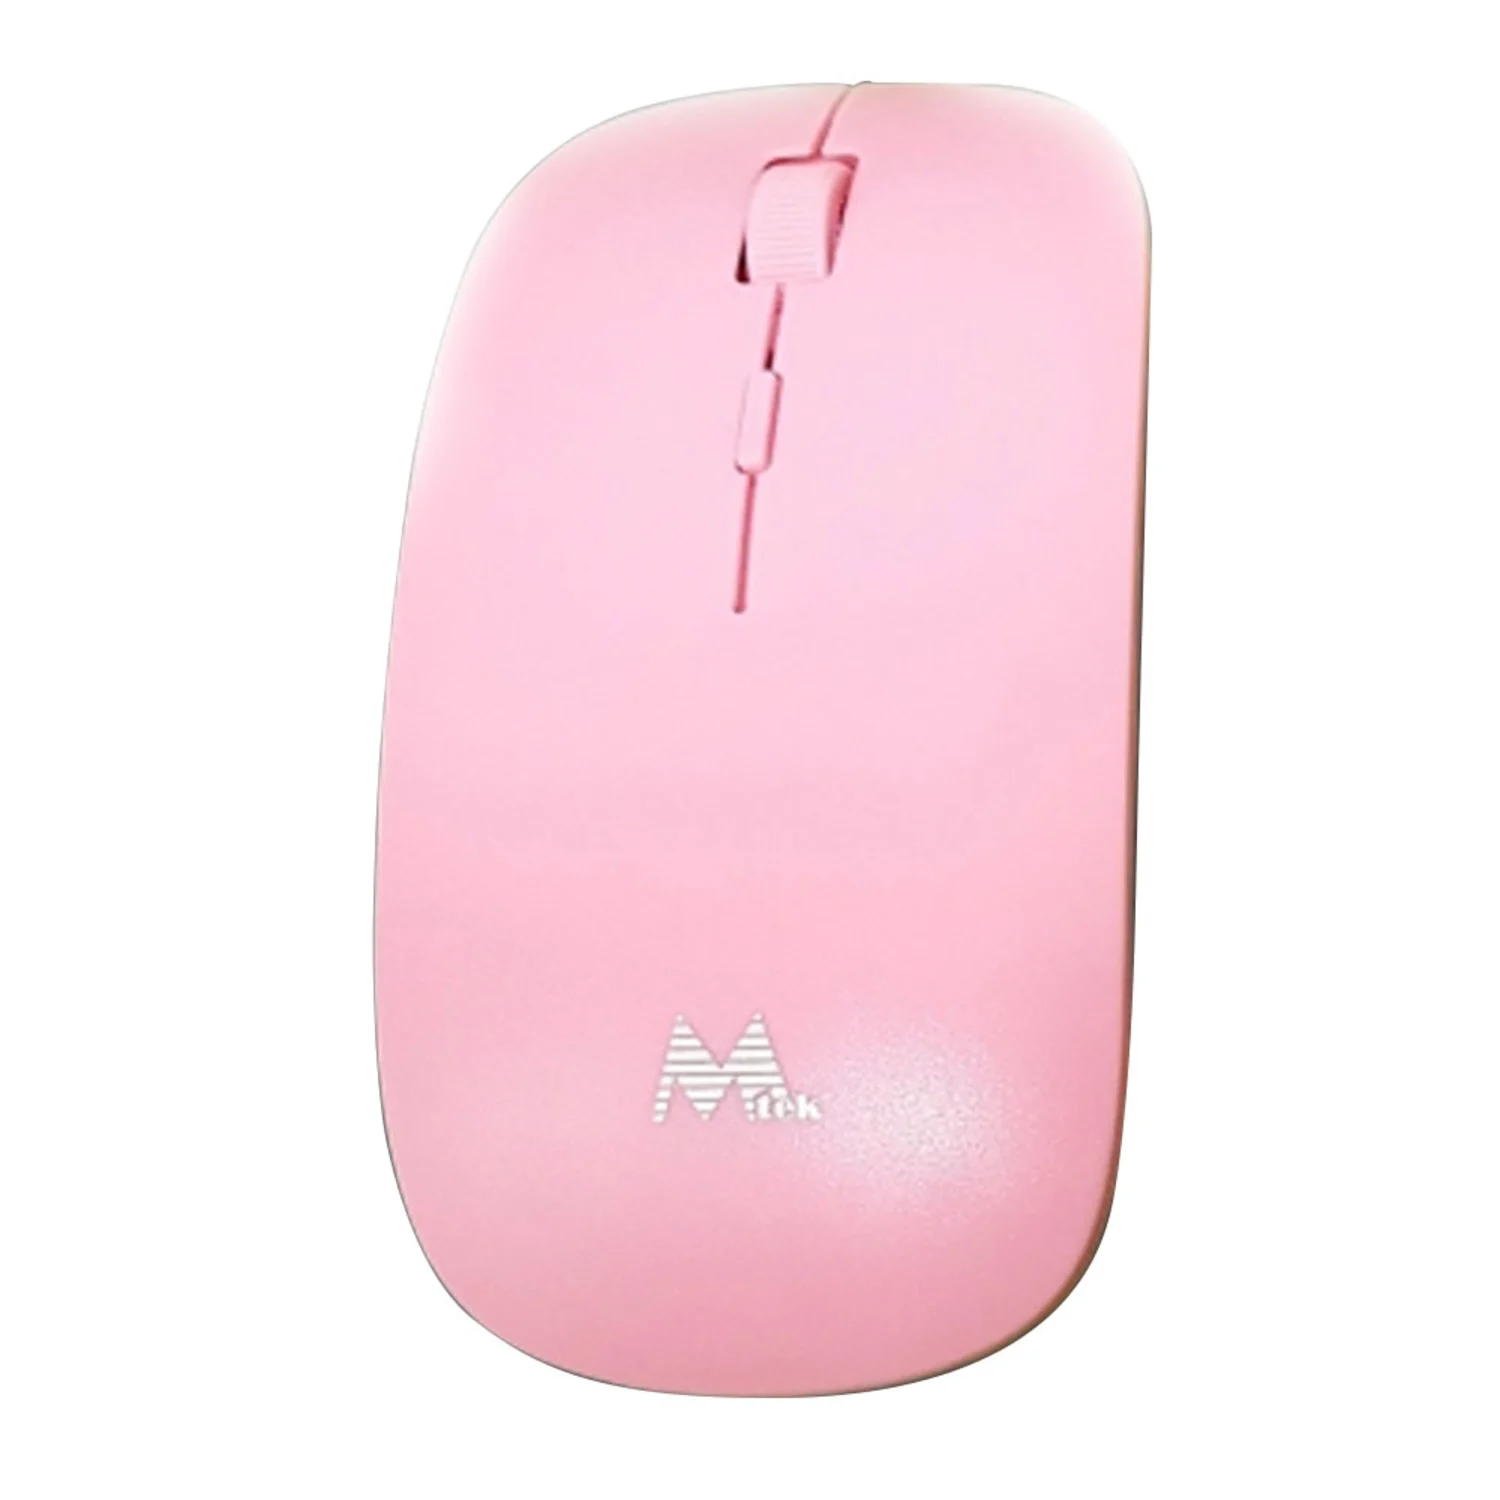 Mouse Mtek PMF423P Wireless / USB Nano - Rosa